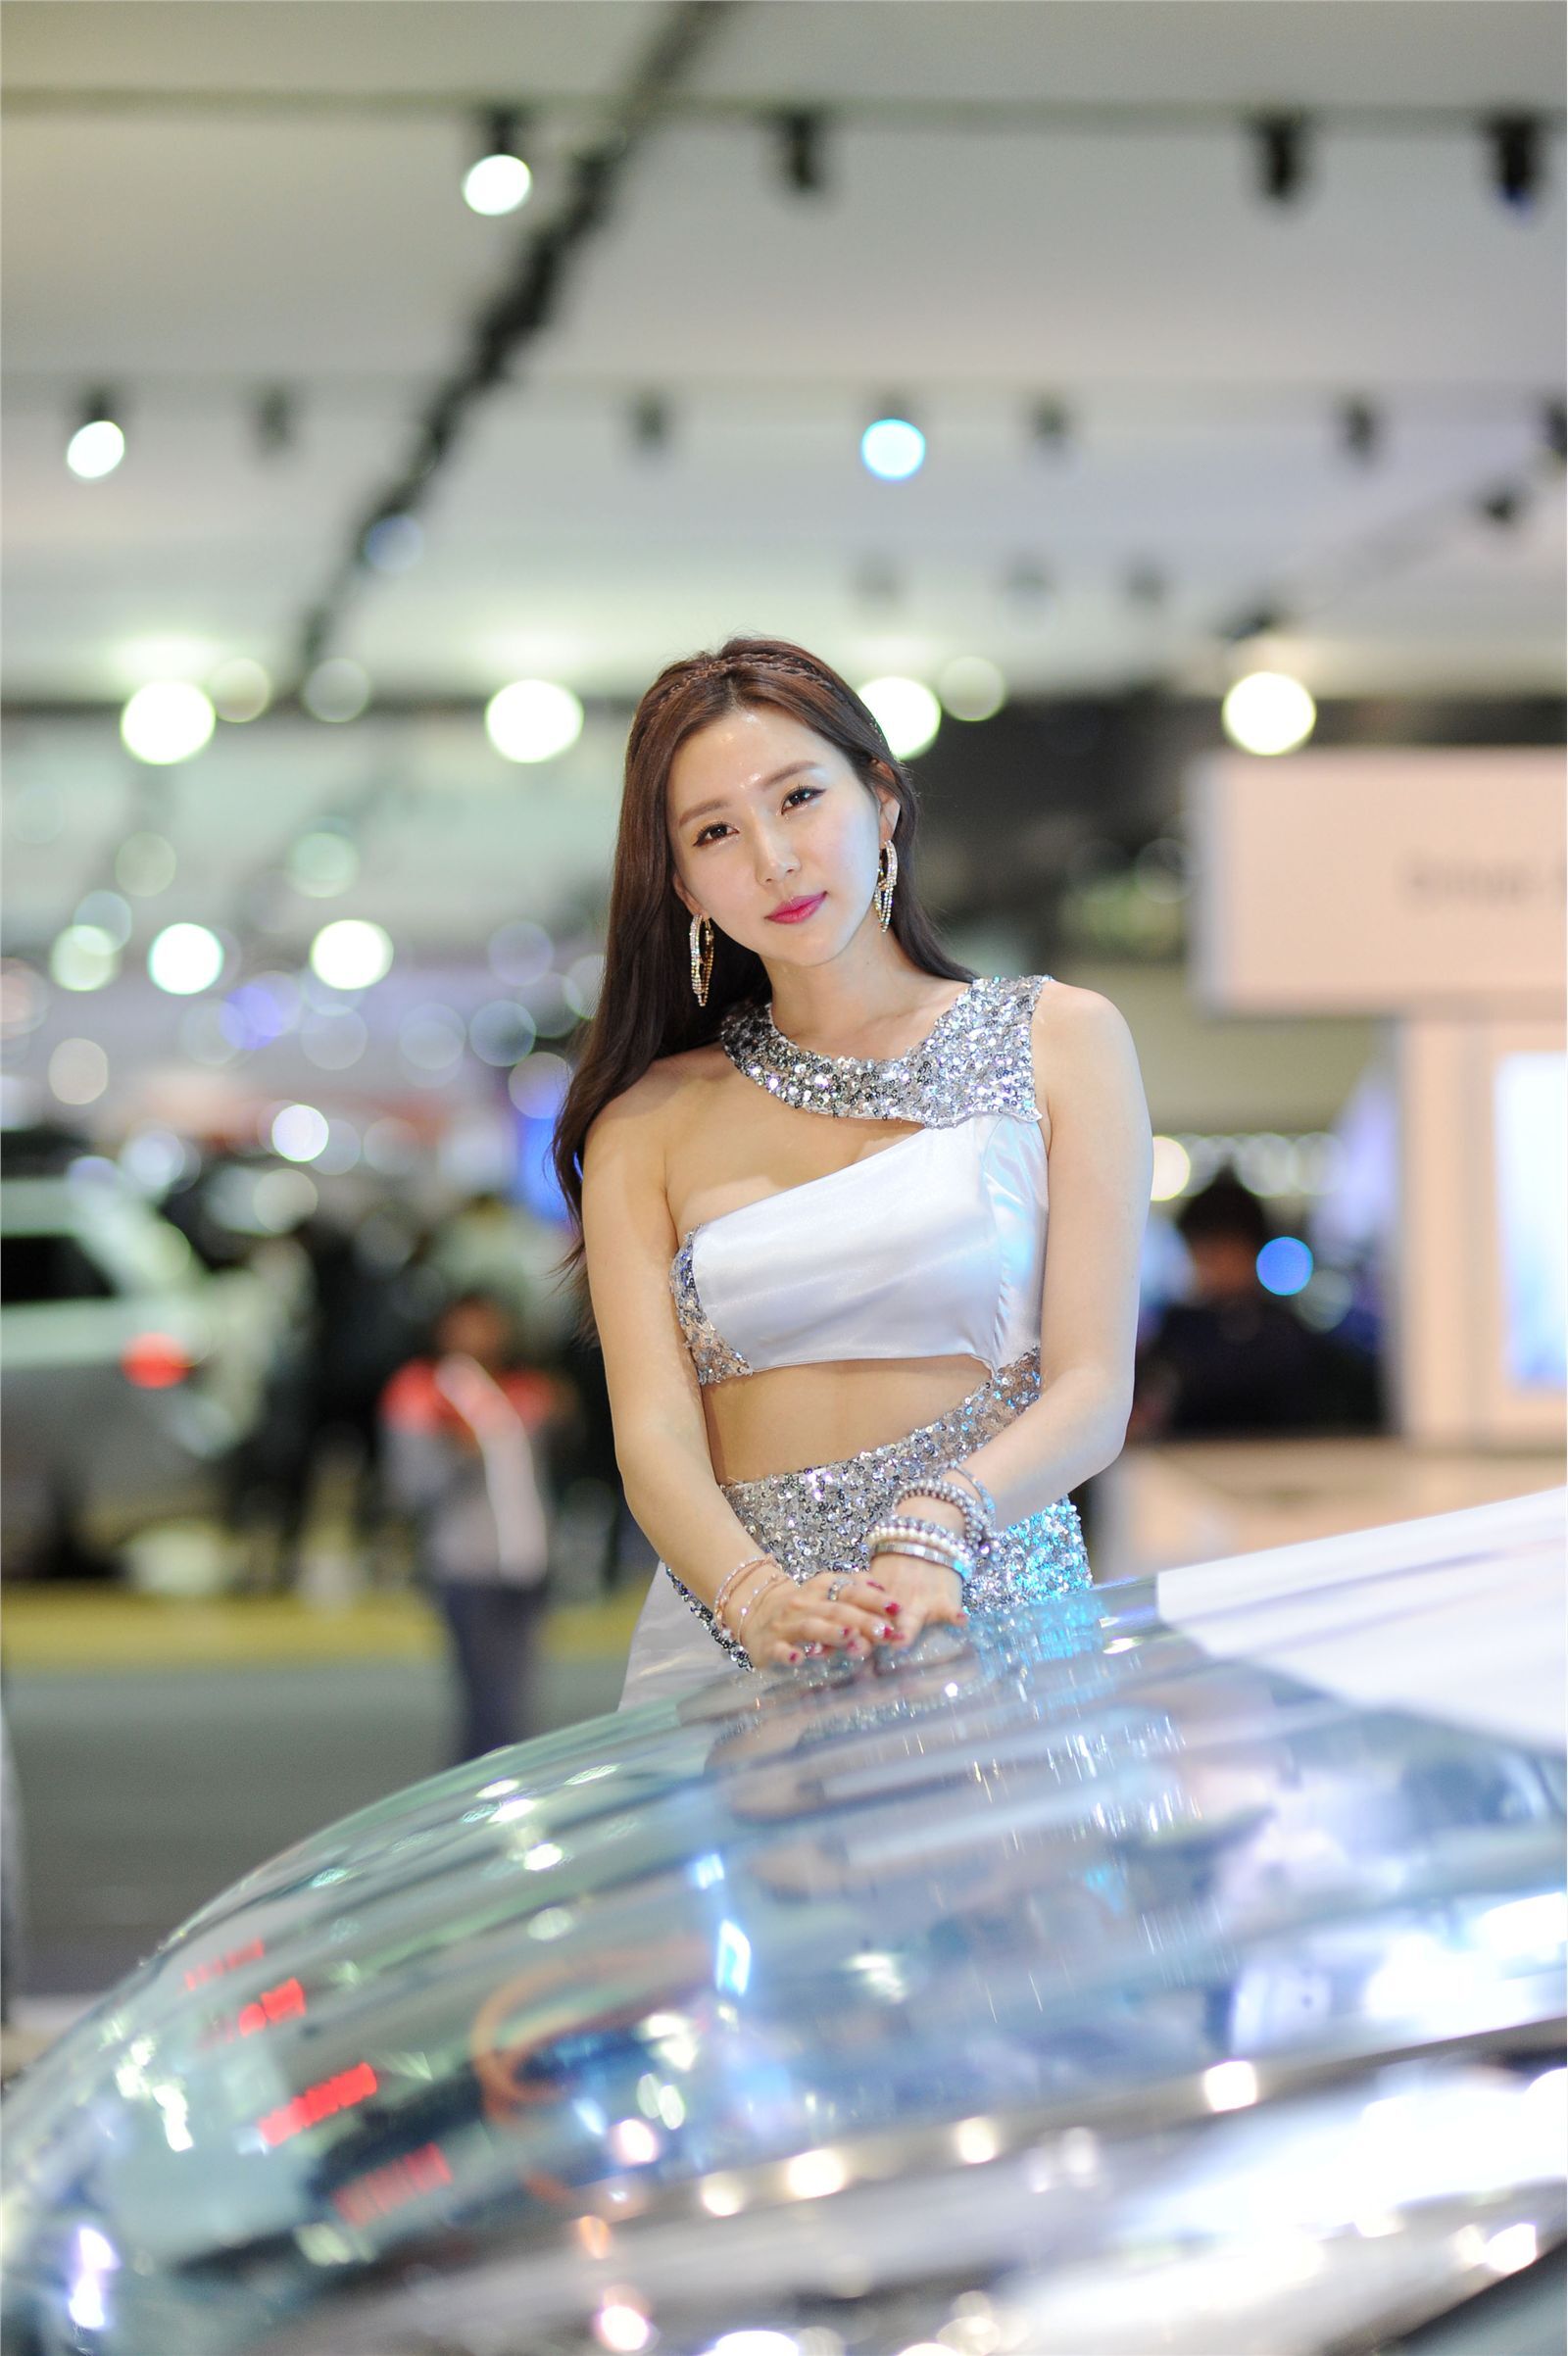 Cui Yuzhen, a beautiful car model at 2015 Korea auto show